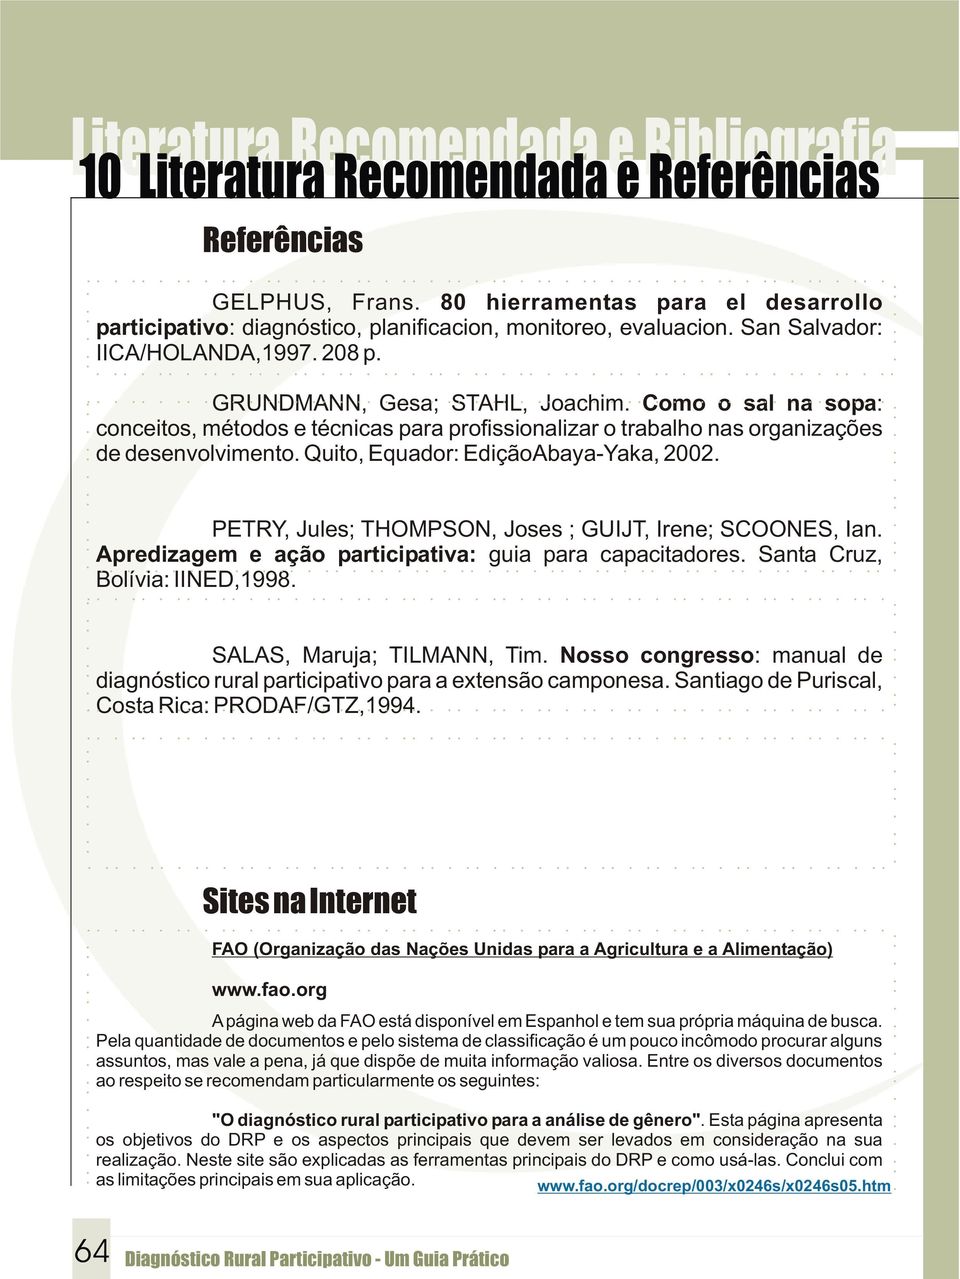 Como o sal na sopa: conceitos, métodos e técnicas para profissionalizar o trabalho nas organizações de desenvolvimento. Quito, Equador: EdiçãoAbaya-Yaka, 2002.